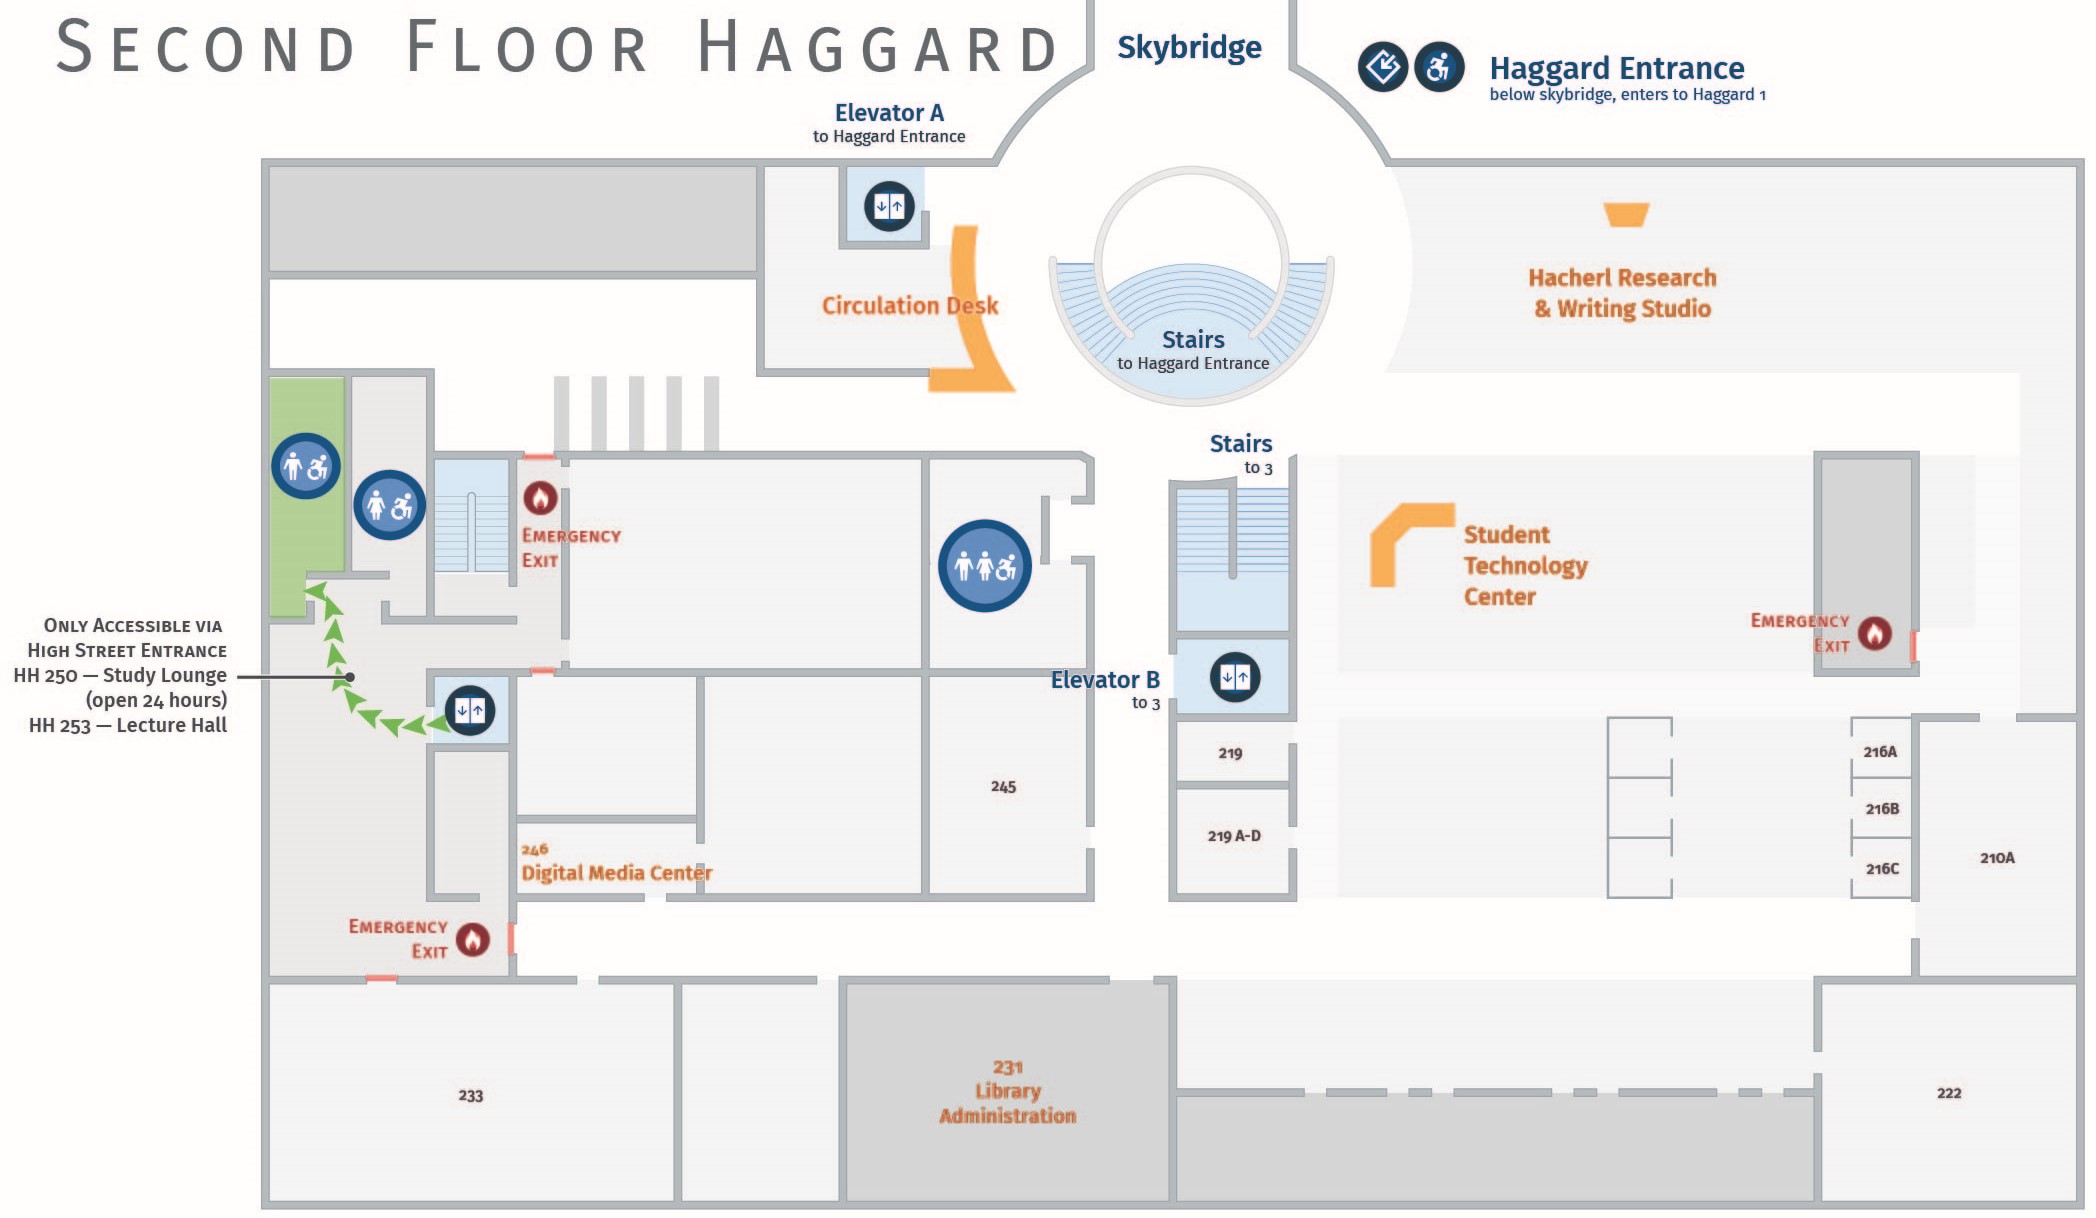 Floor plan, second floor of Haggard with accessible path to men's restroom. Haggard 251.